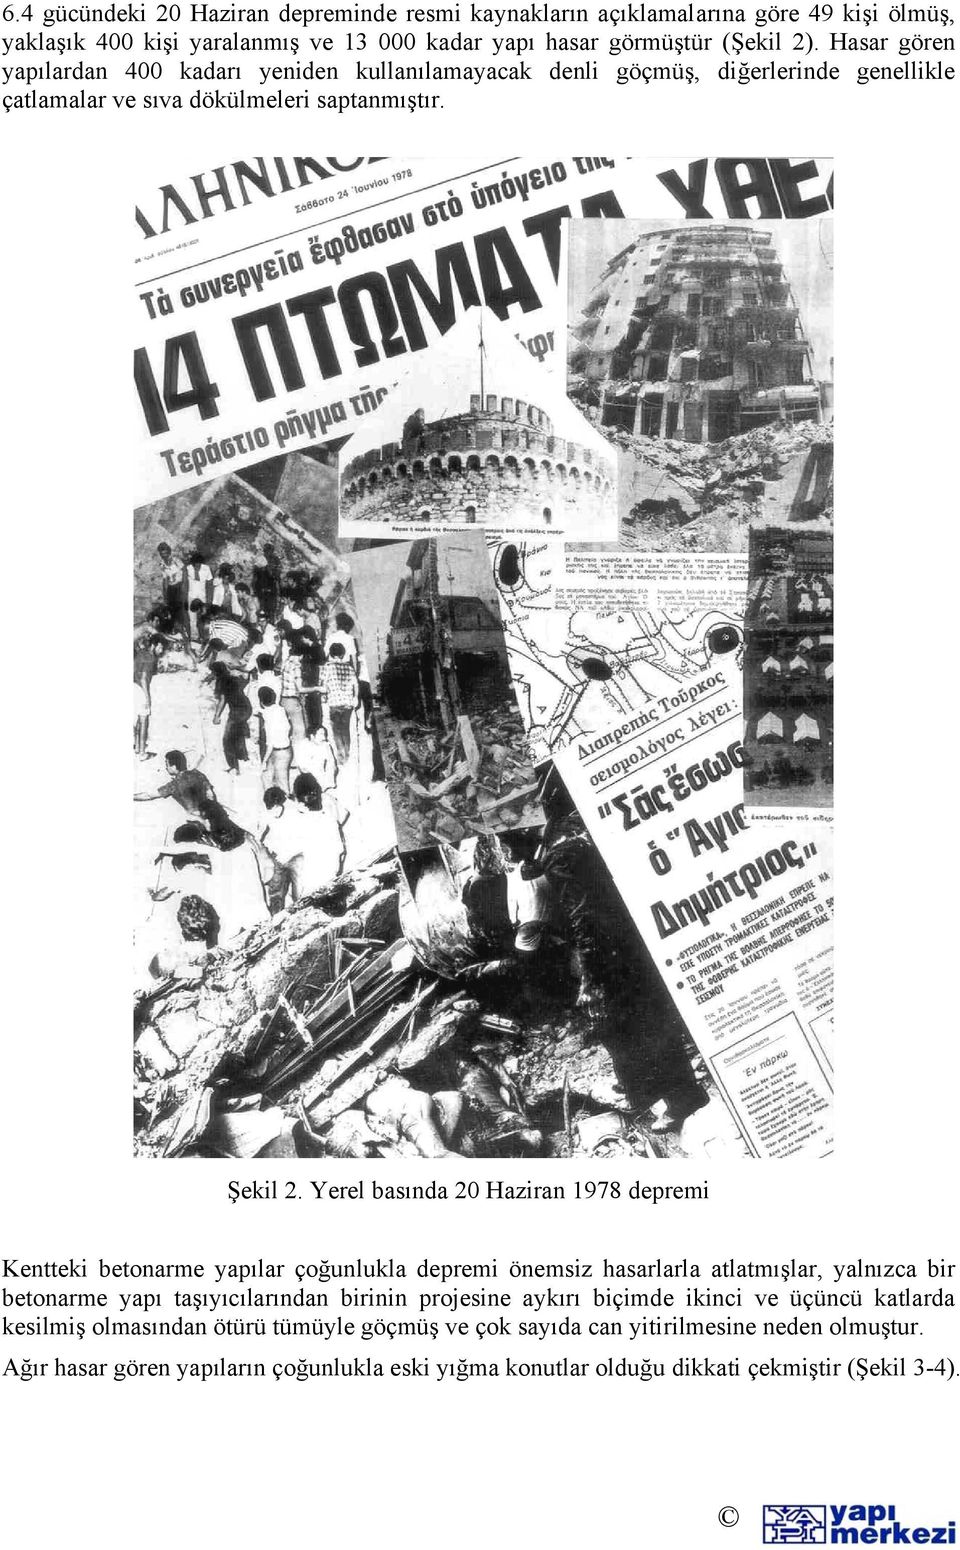 Yerel basında 20 Haziran 1978 depremi Kentteki betonarme yapılar çoğunlukla depremi önemsiz hasarlarla atlatmışlar, yalnızca bir betonarme yapı taşıyıcılarından birinin projesine